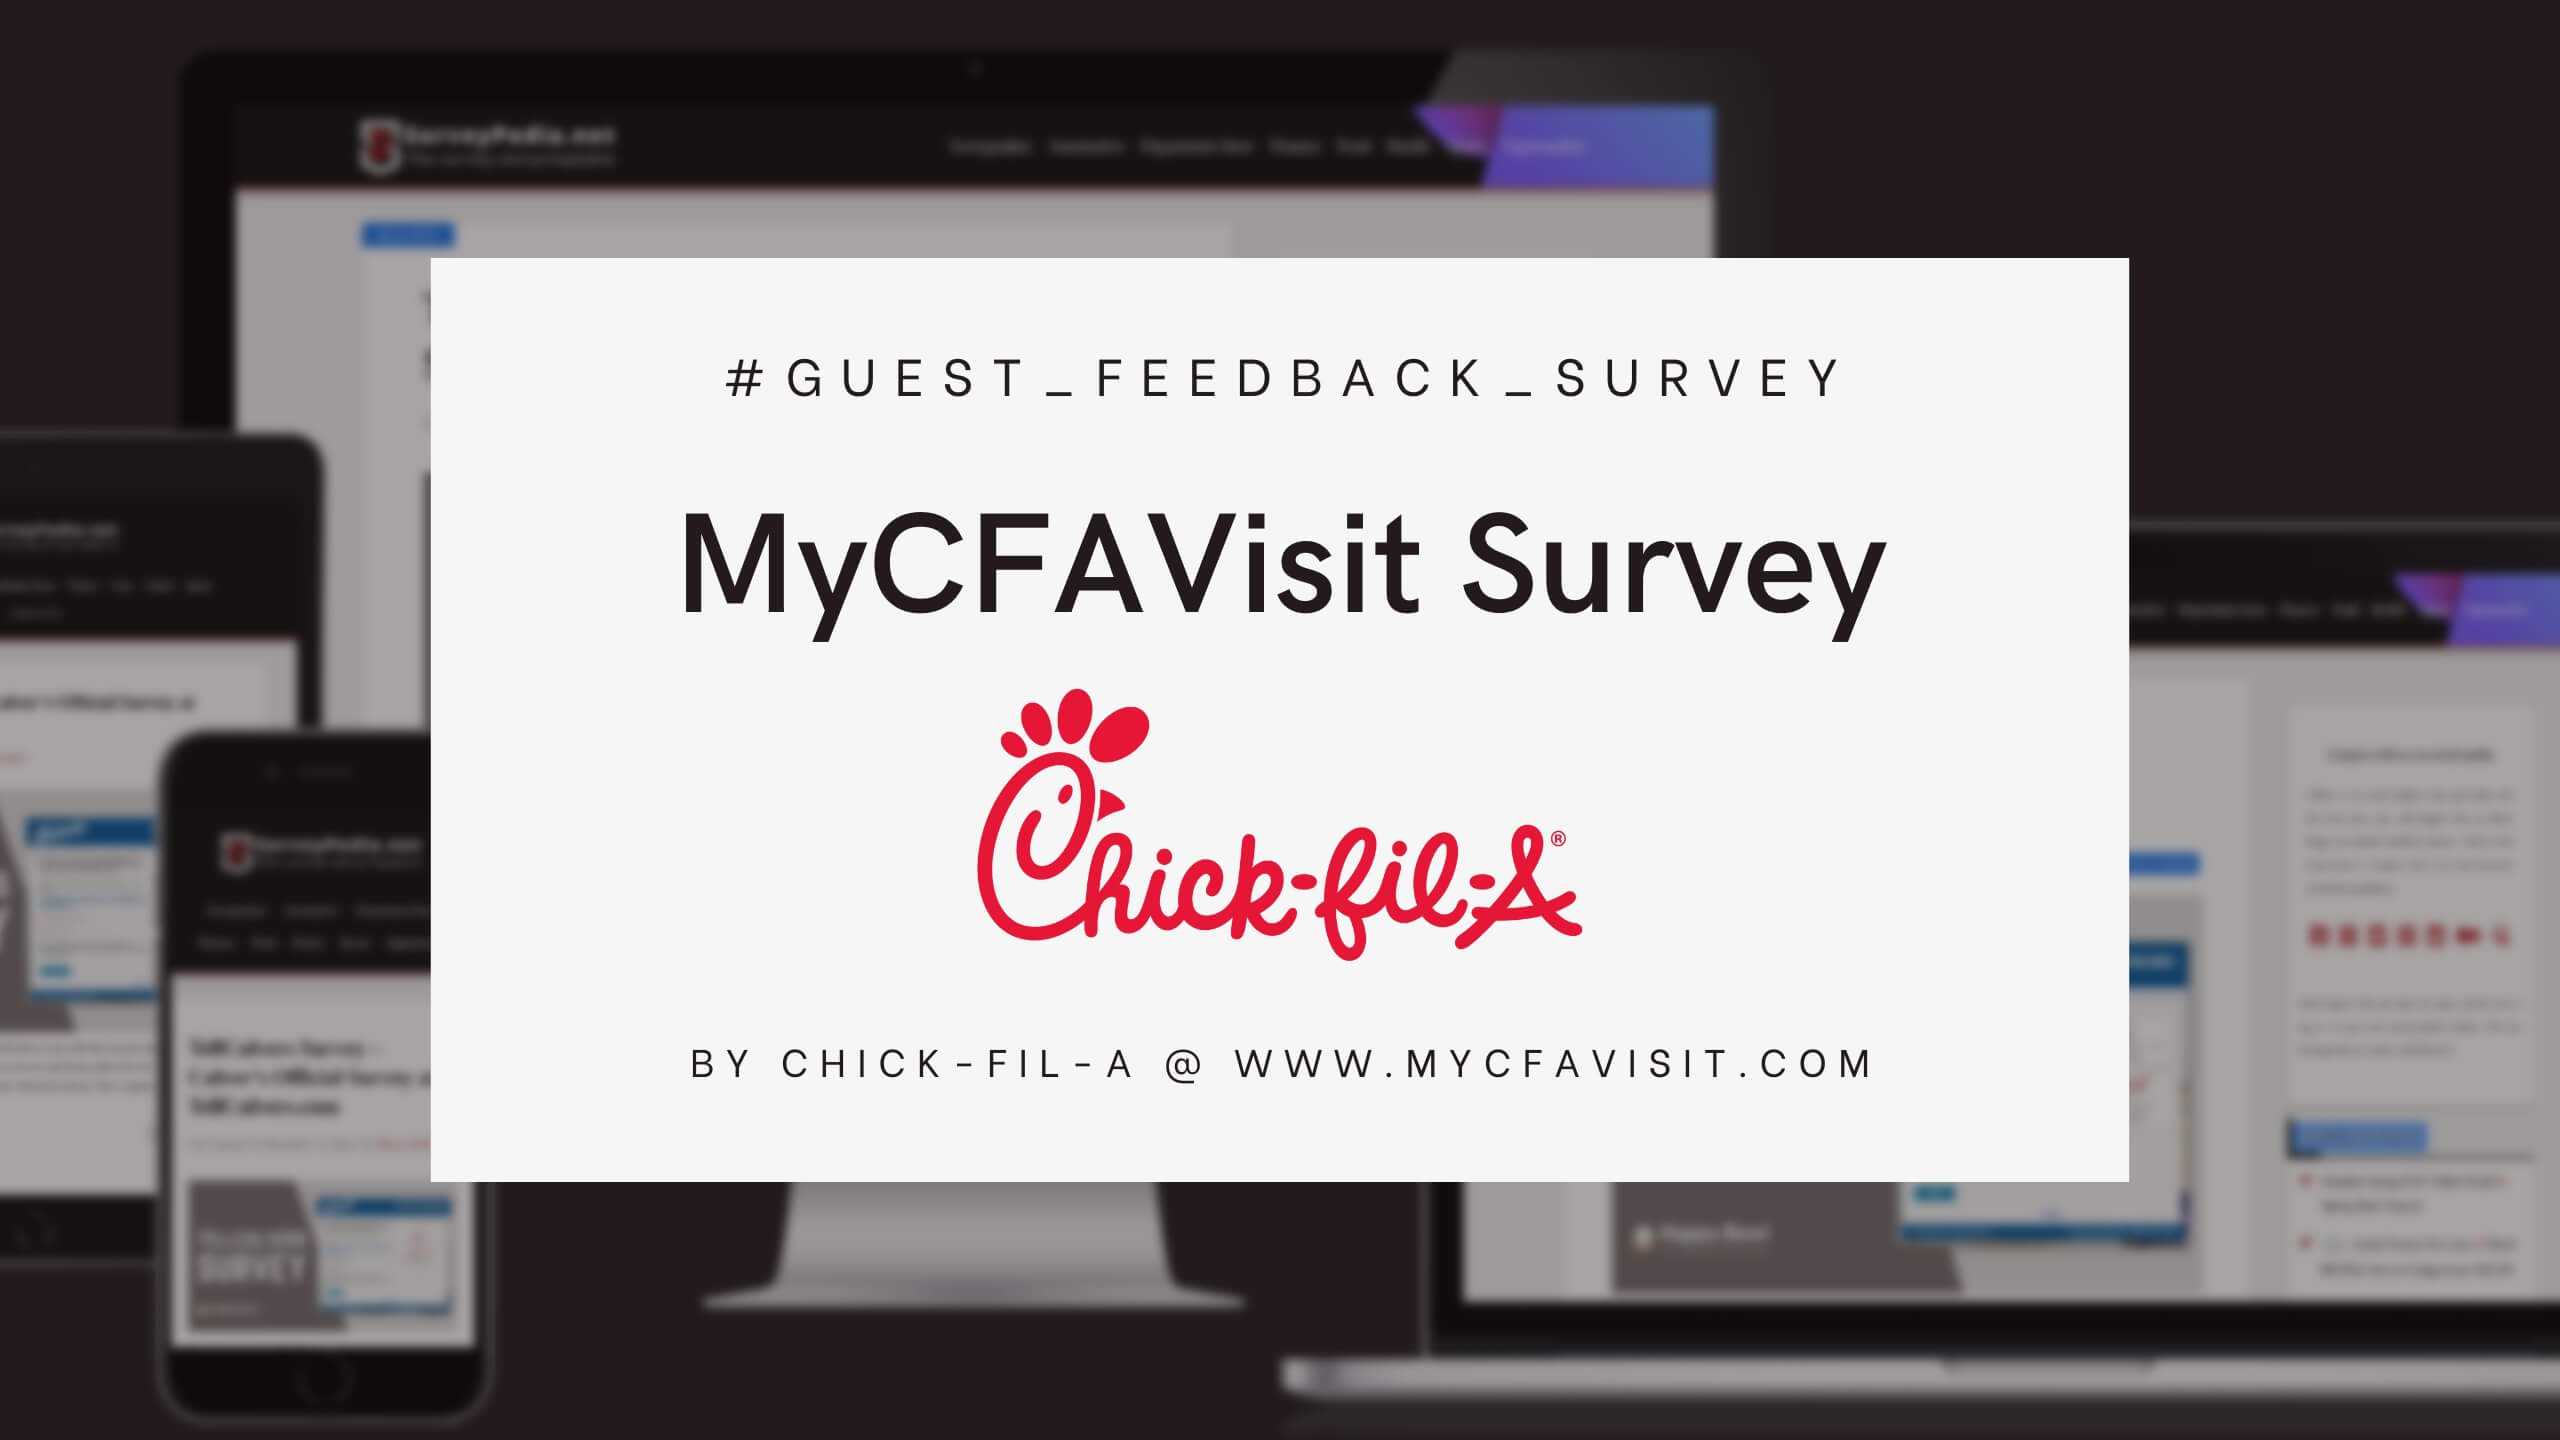 MyCFAVisit Survey: Official Chick-fil-A Survey at www.mycfavisit.com